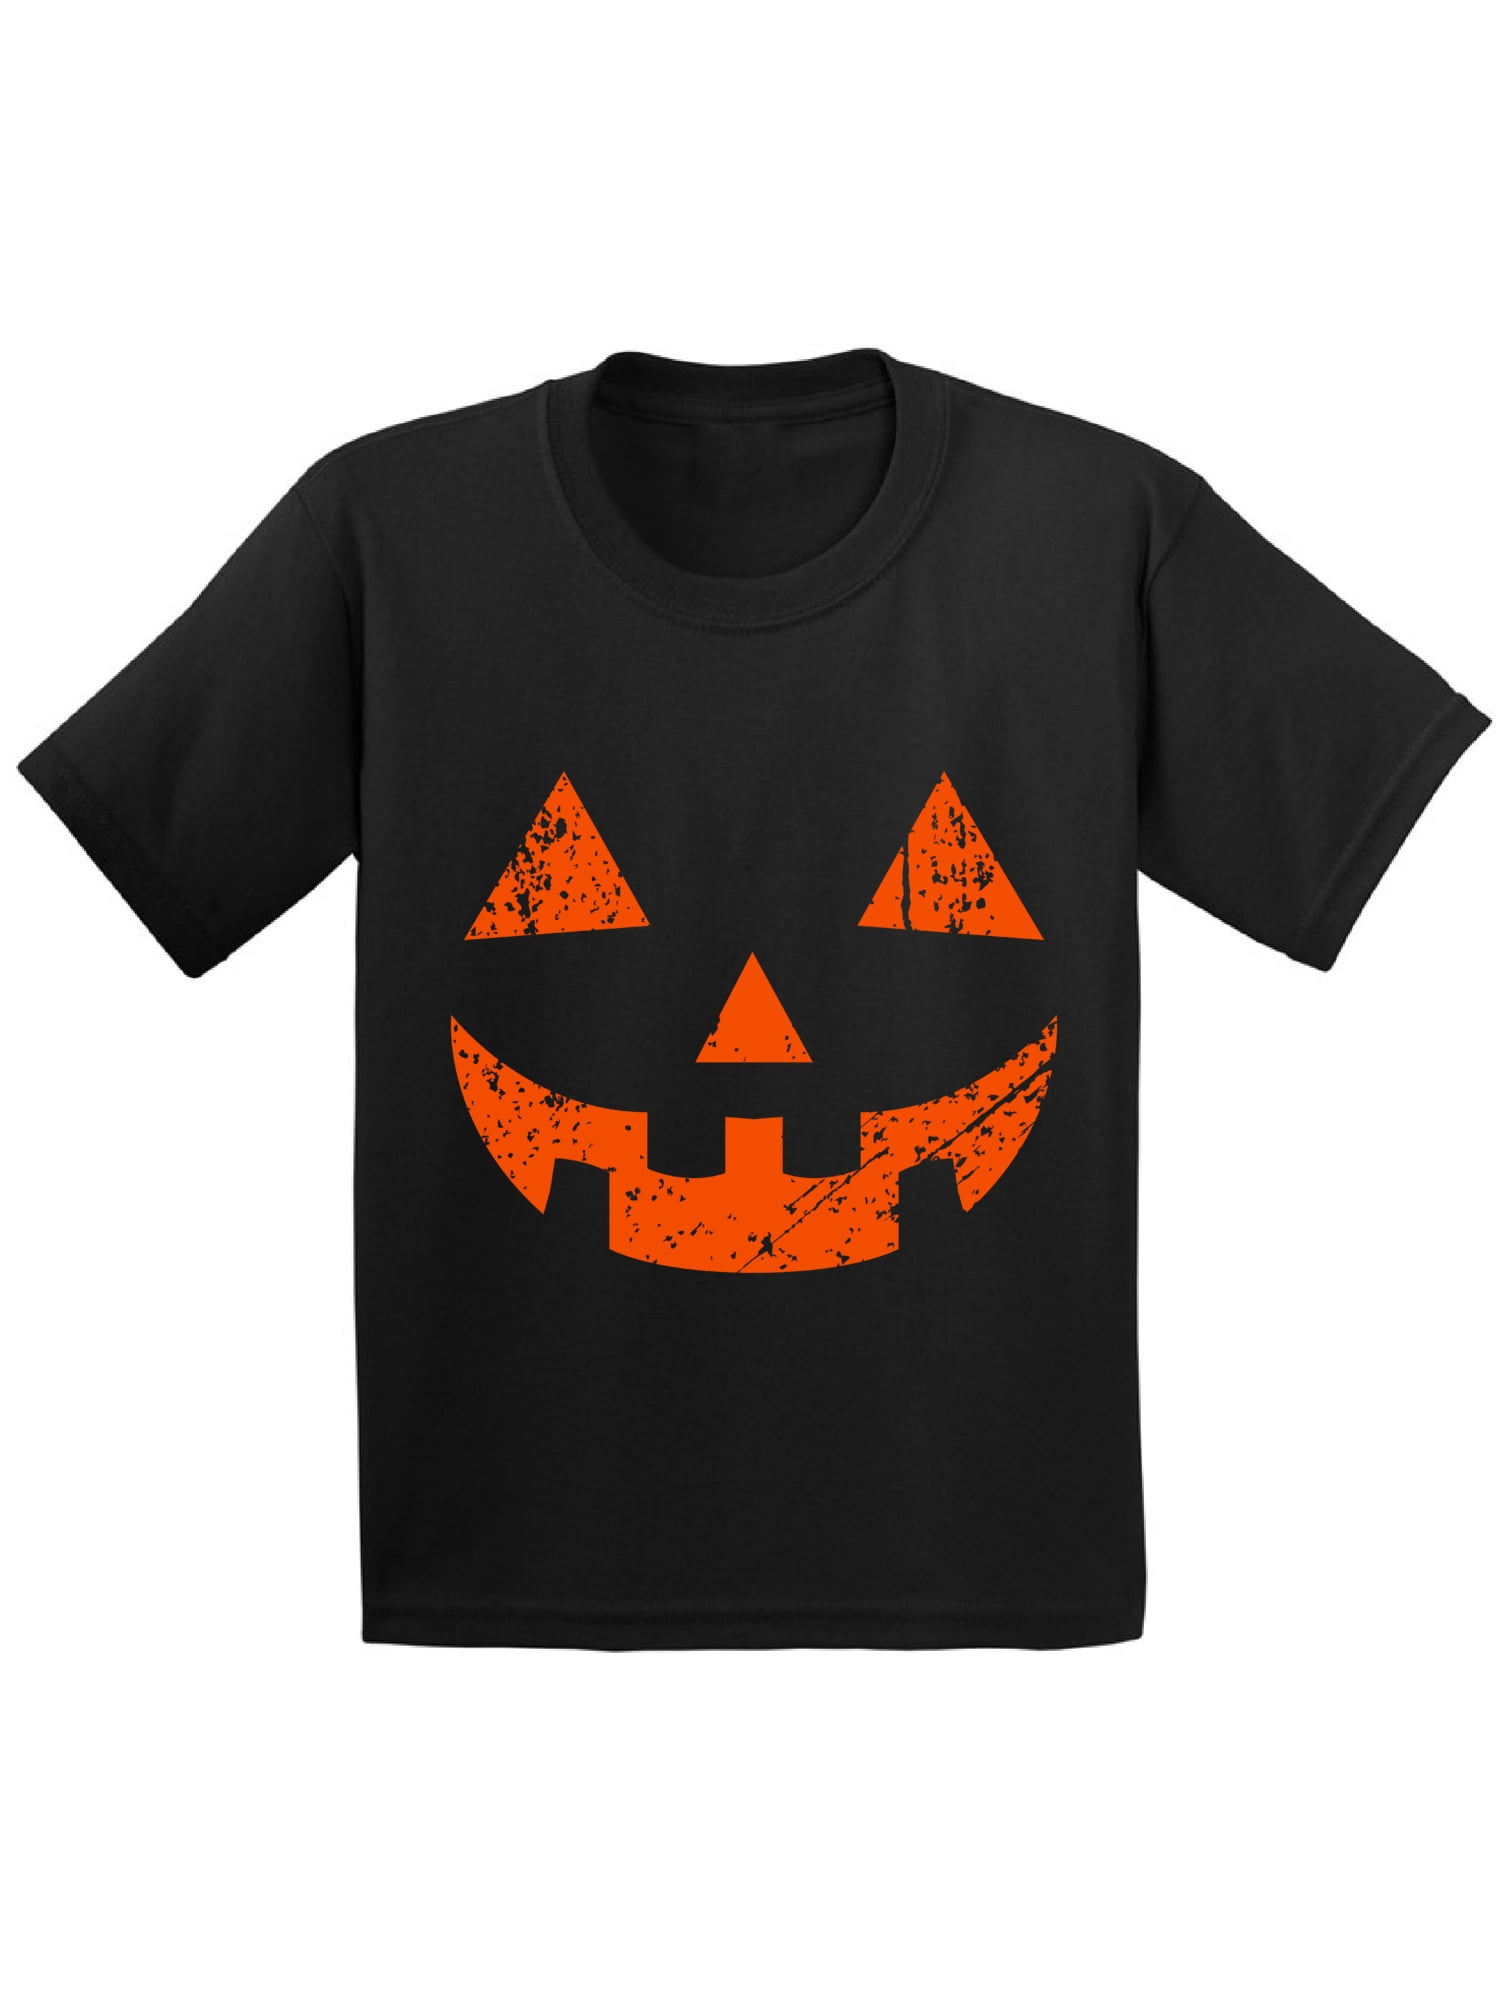 ghost shirt boys monogrammed pumpkin shirt halloween applique shirt Boys halloween shirt jack o lantern shirt spider shirt